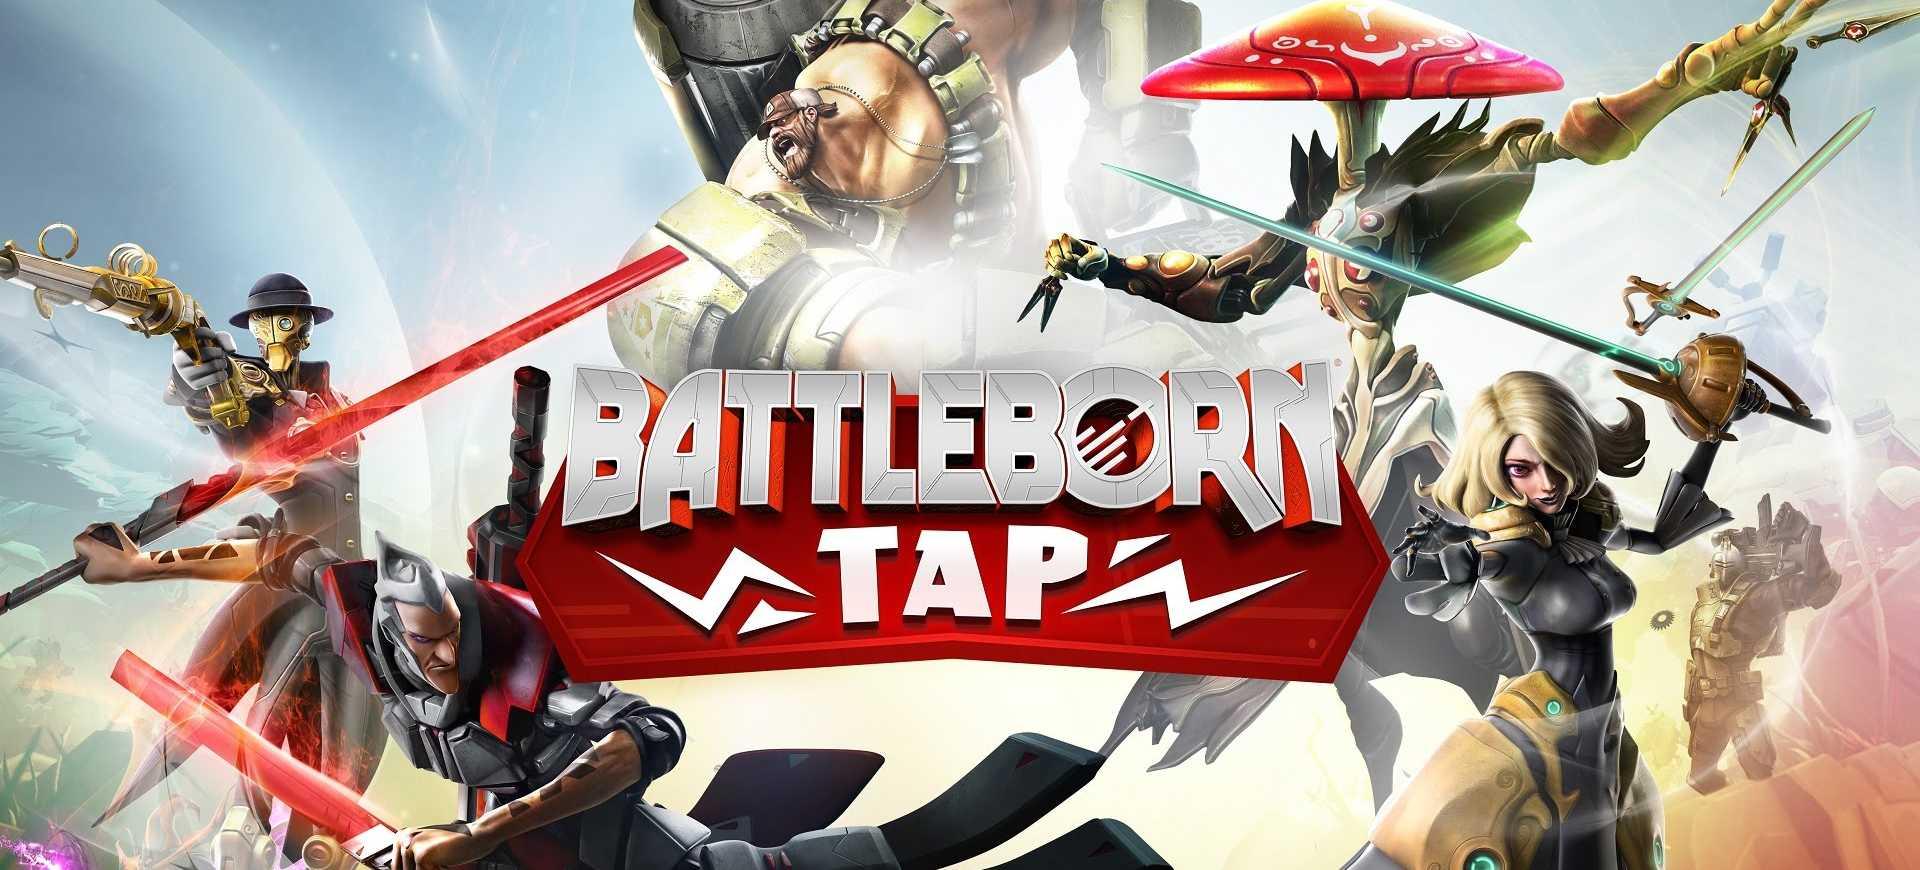 Battleborn Tap của 2K vừa đổ bộ trên Android và iOS - Tin Game Mobile